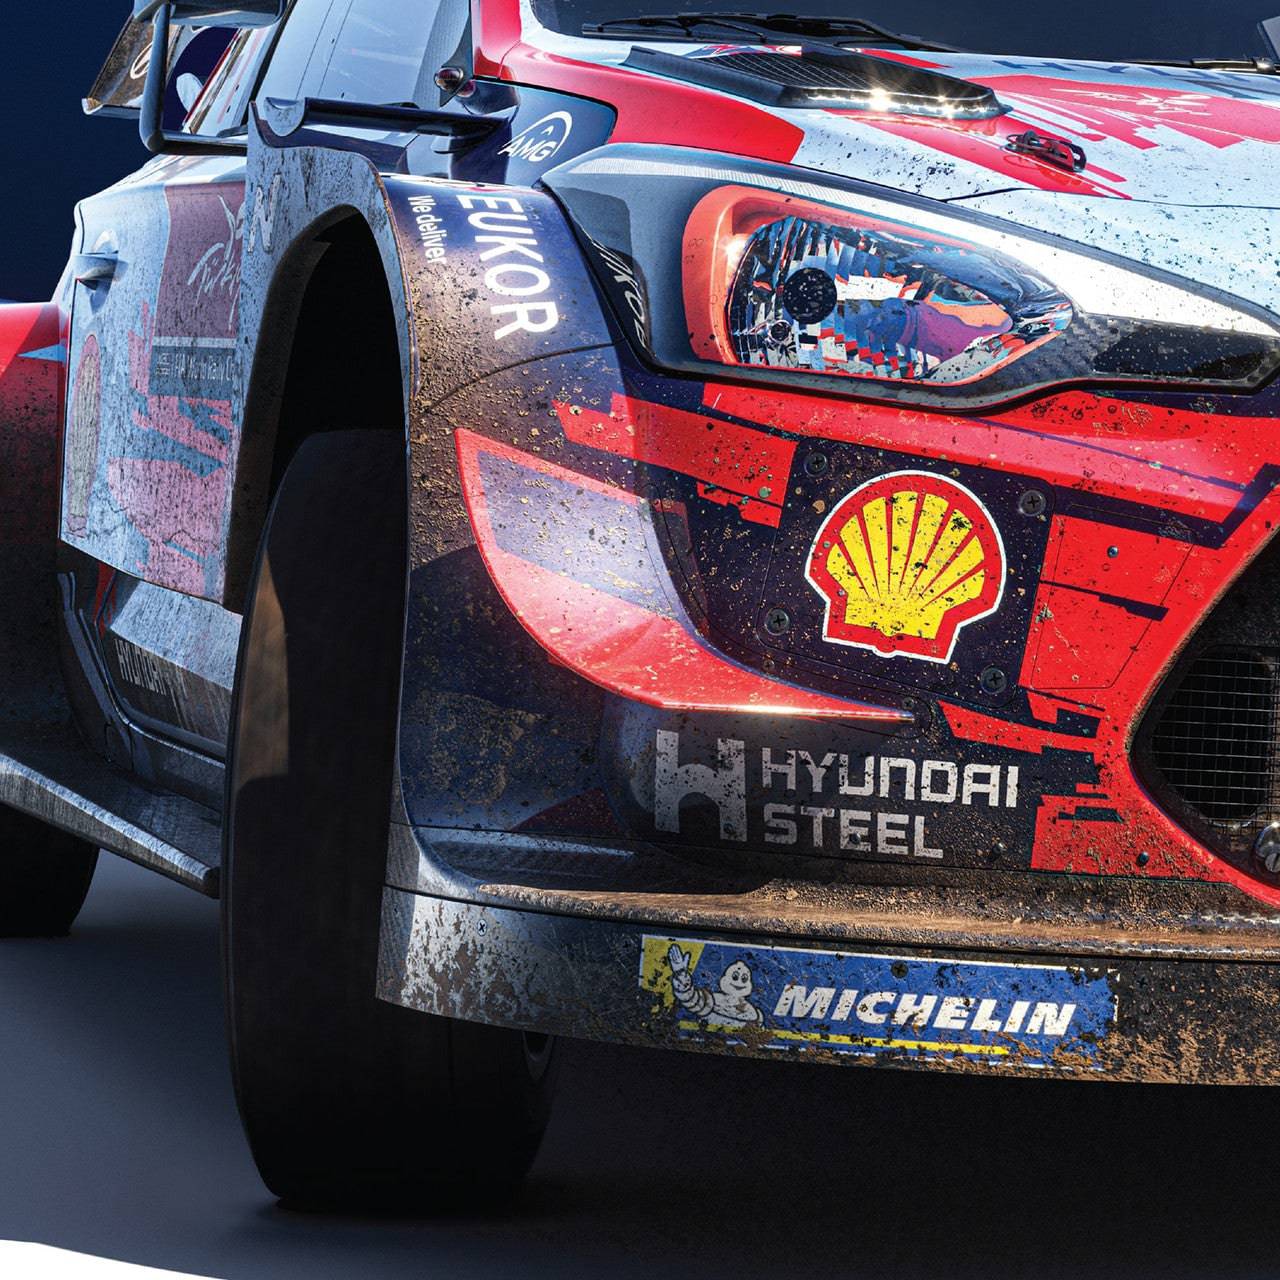 Hyundai Motorsport - Rally Turkey Marmaris 2020 - Sébastien Loeb | Collector's Edition | Unique #s